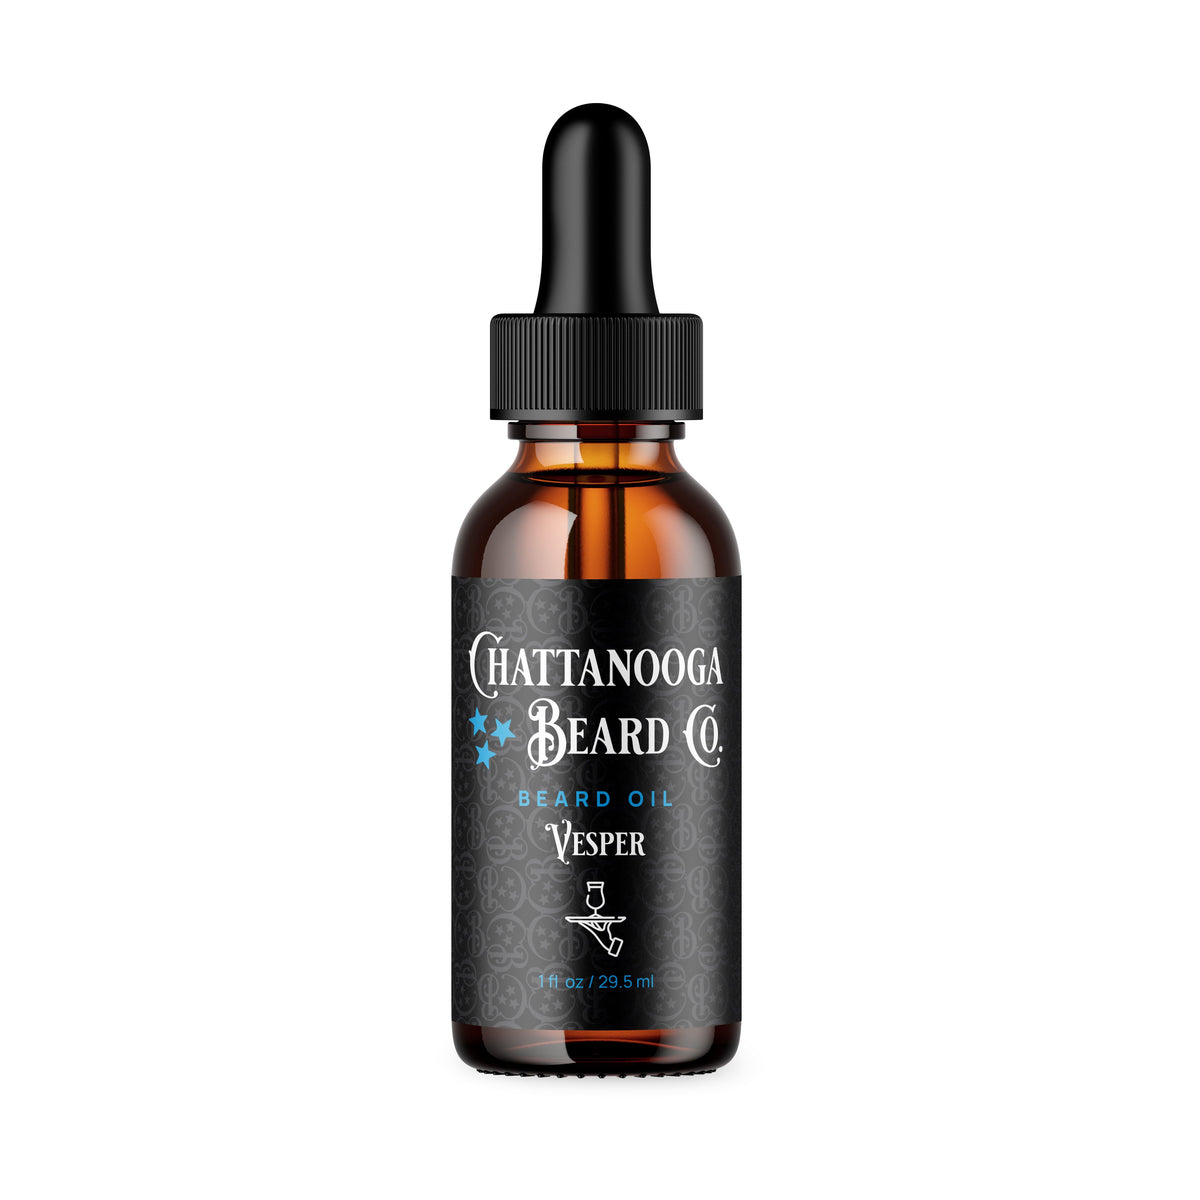 Premium Beard Oil Oil Chattanooga Beard Co. Vesper 